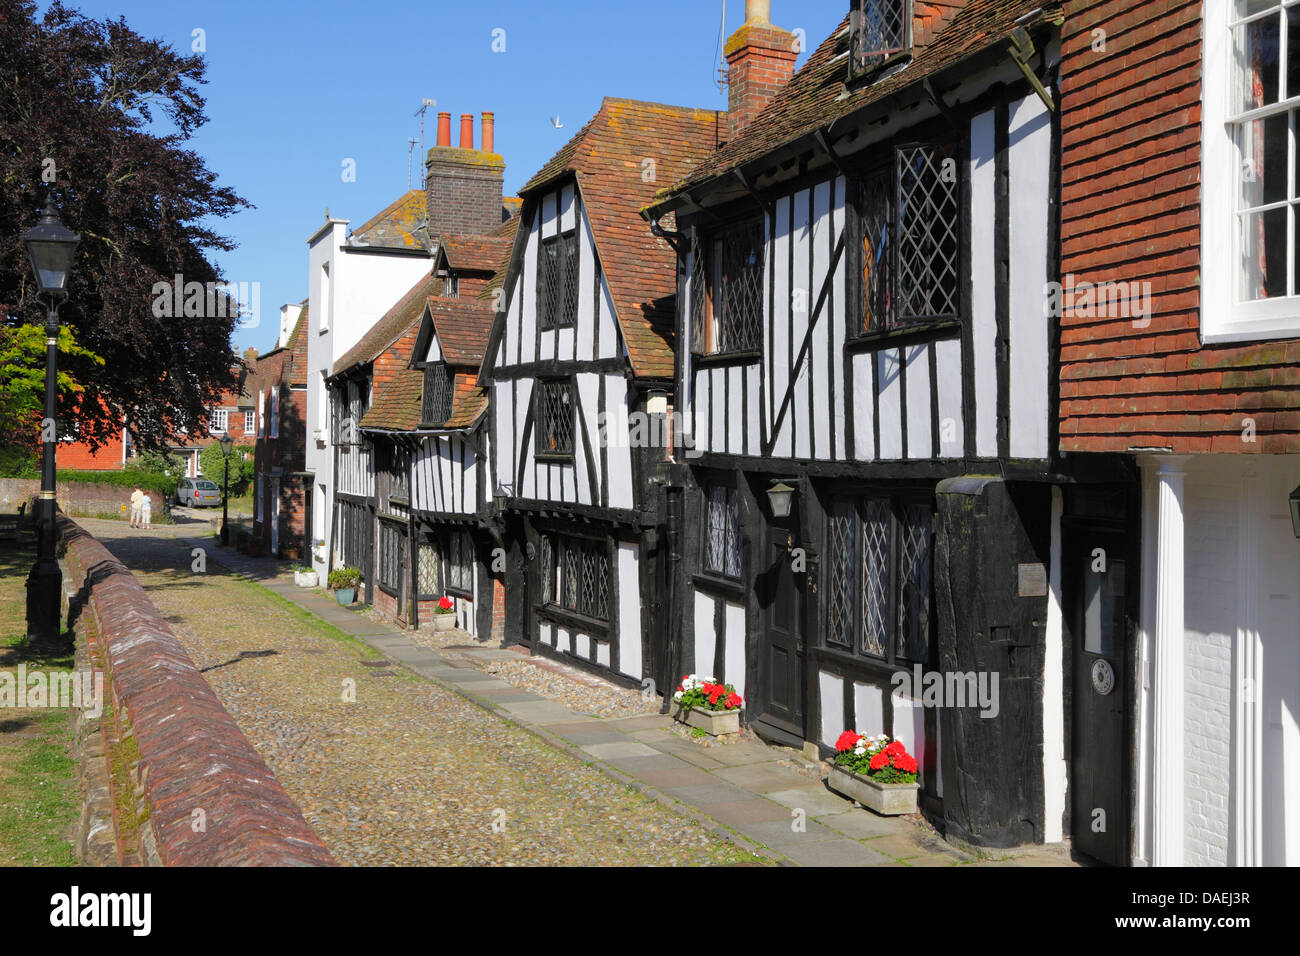 Maisons à pans de bois médiévale place de l'Église, Rye, East Sussex, Angleterre, RU, FR Banque D'Images